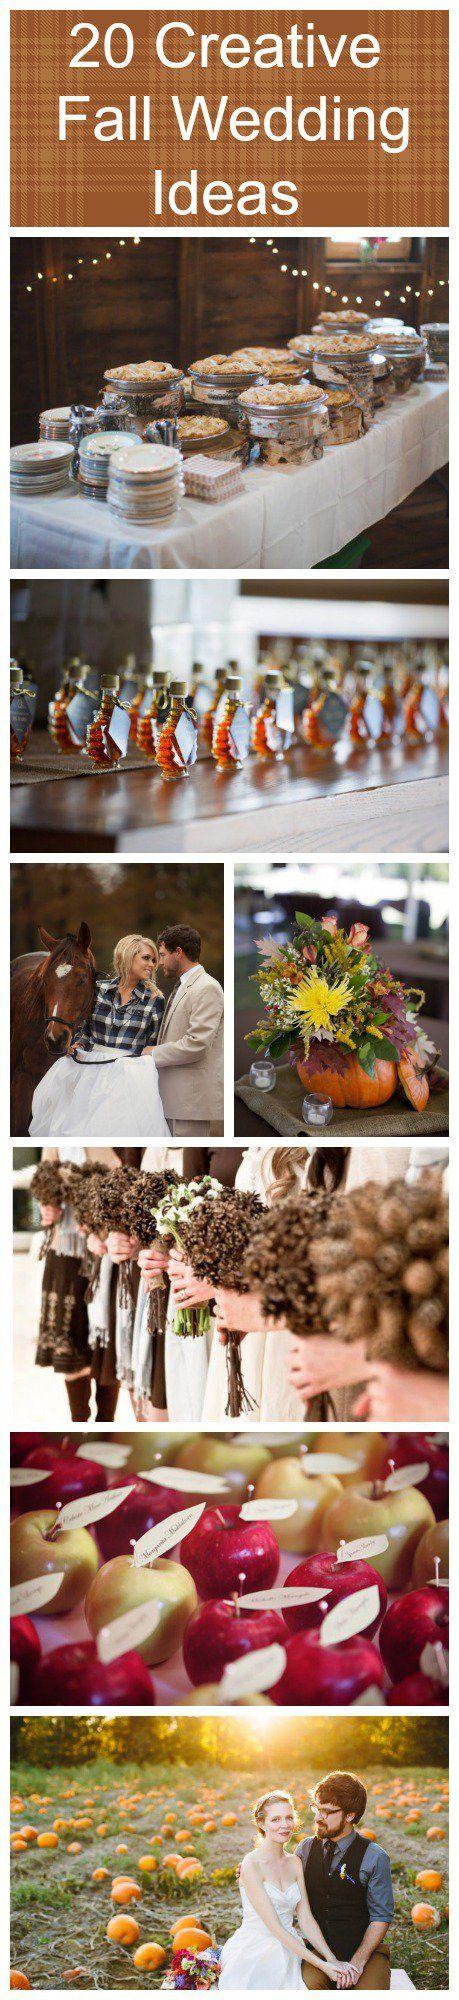 Wedding - 20 Creative Fall Wedding Ideas